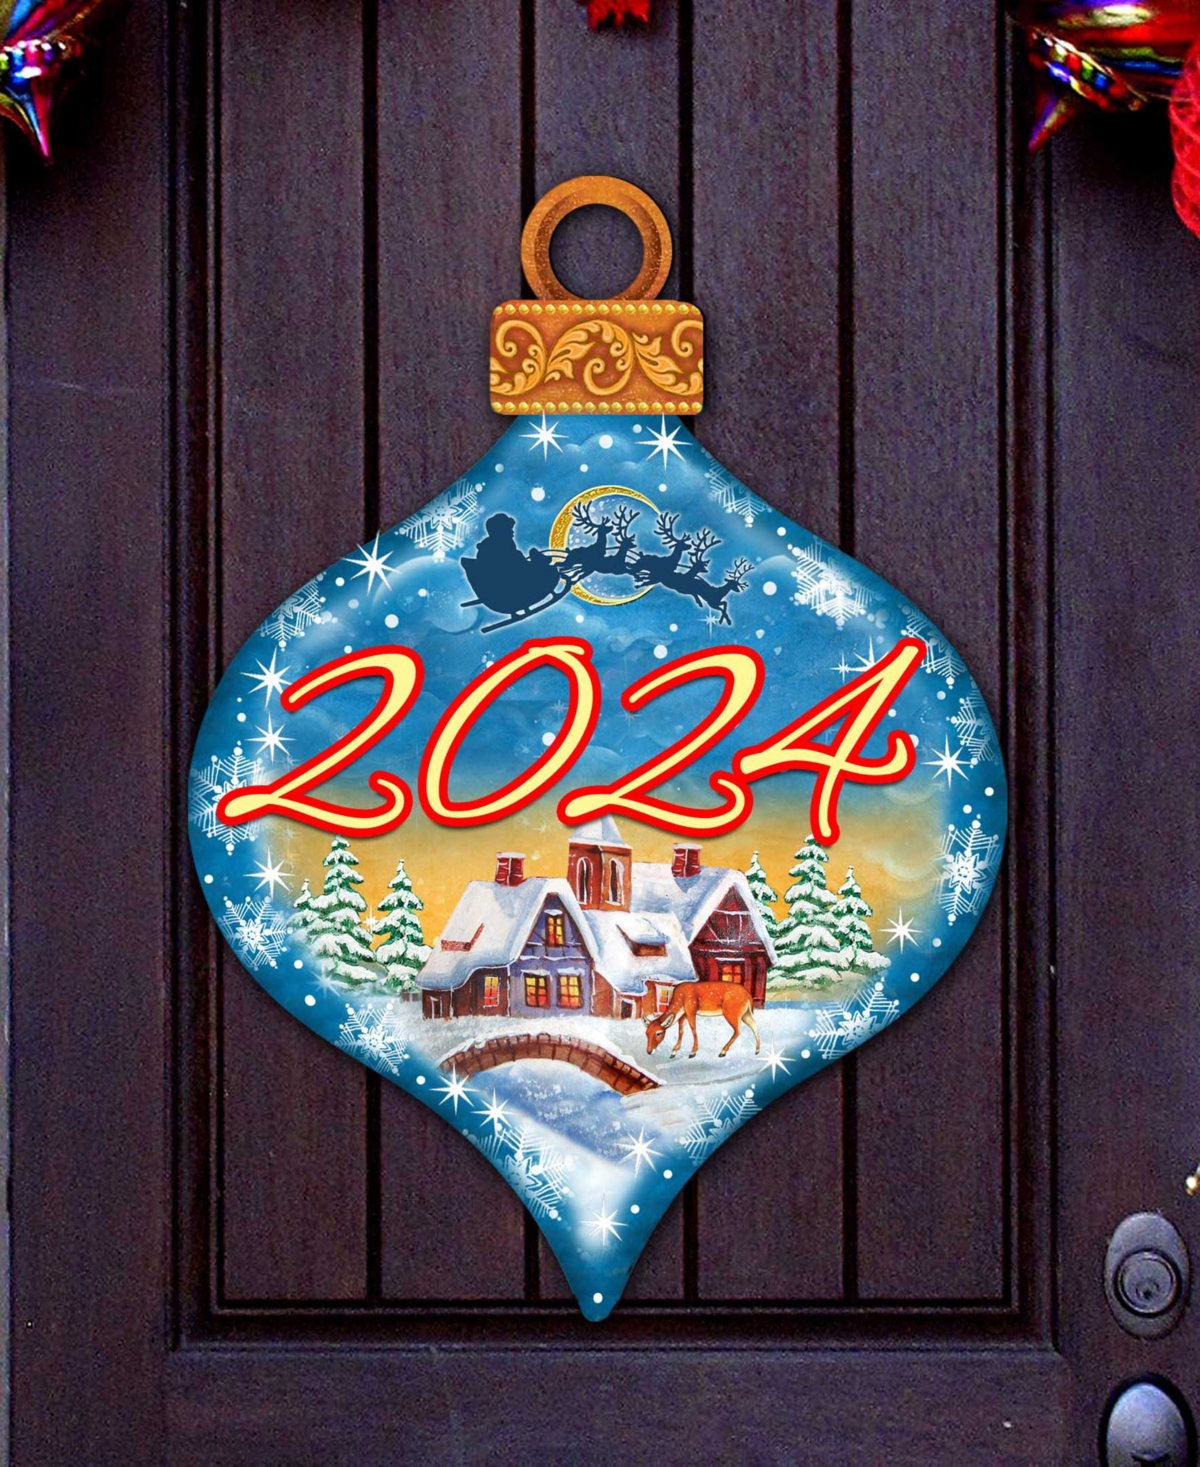 Designocracy 2024 Dated Christmas Village Door Decor Wooden Wall Decor G. Debrekht In Multi Color